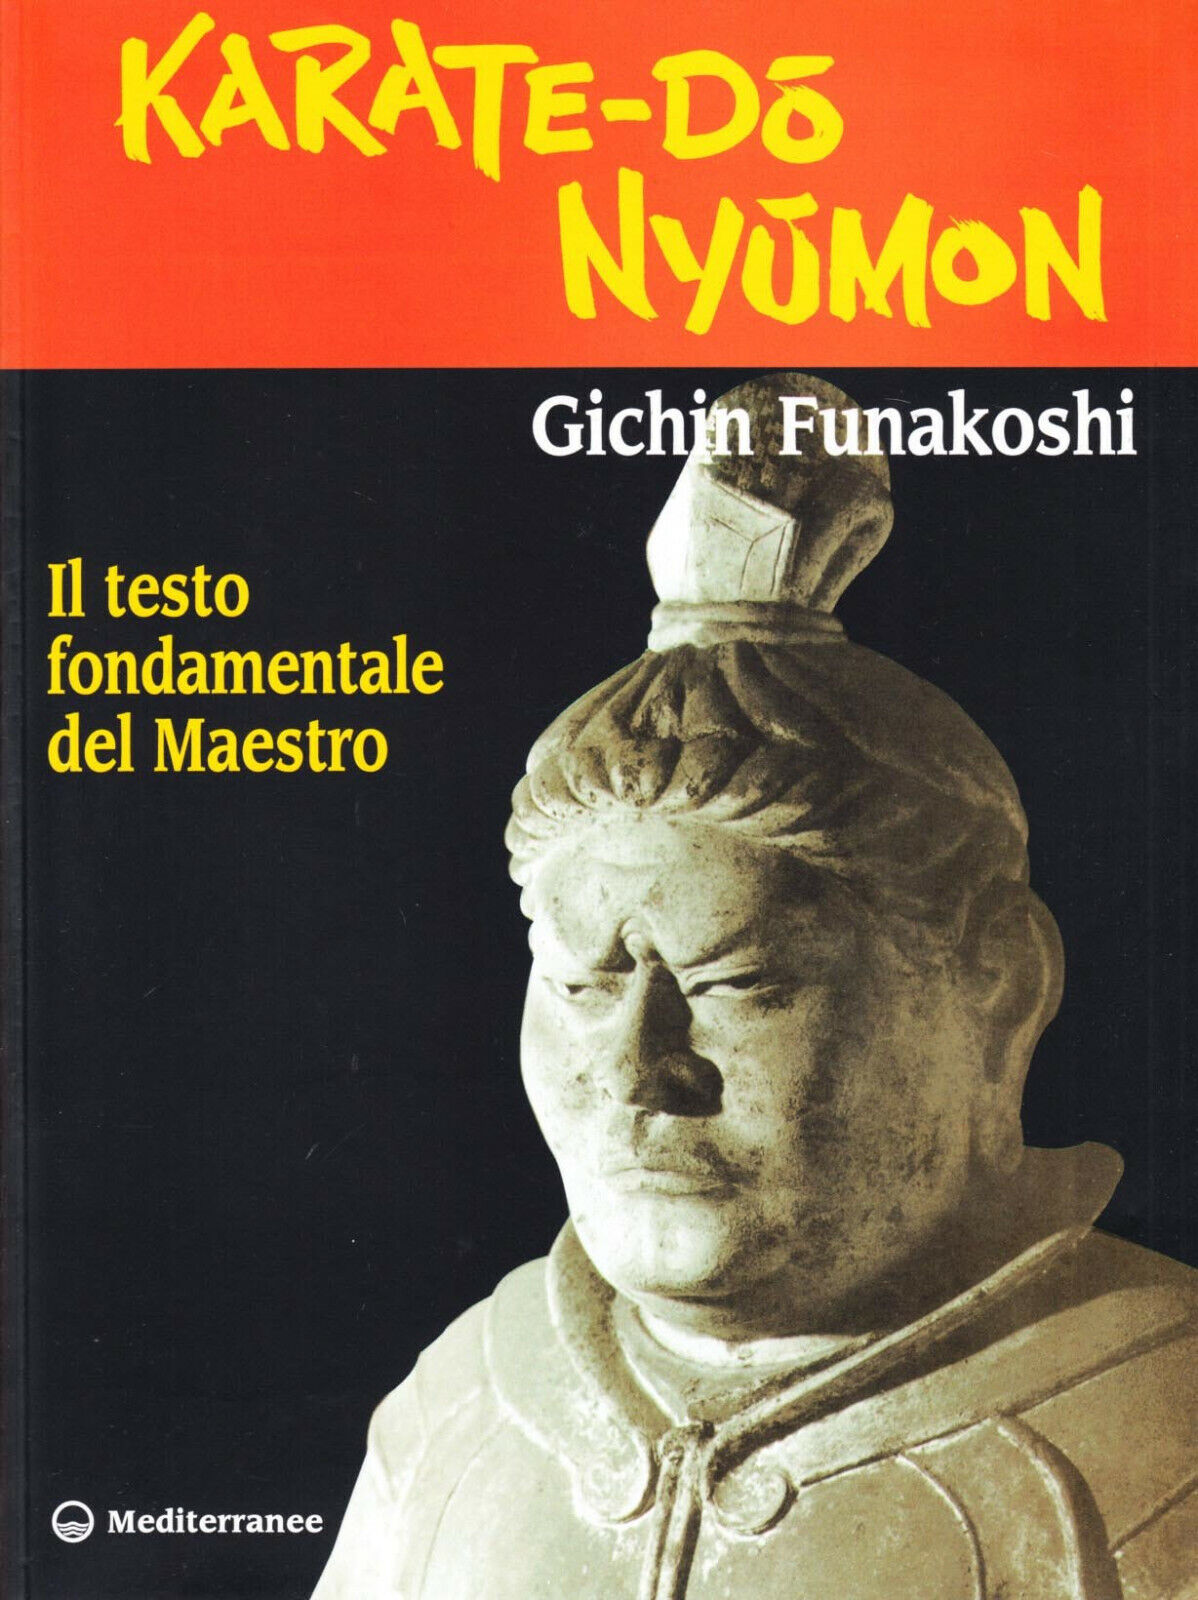 Karate do nyumon - Gichin Funakoshi - edizioni Mediterranee, 1998